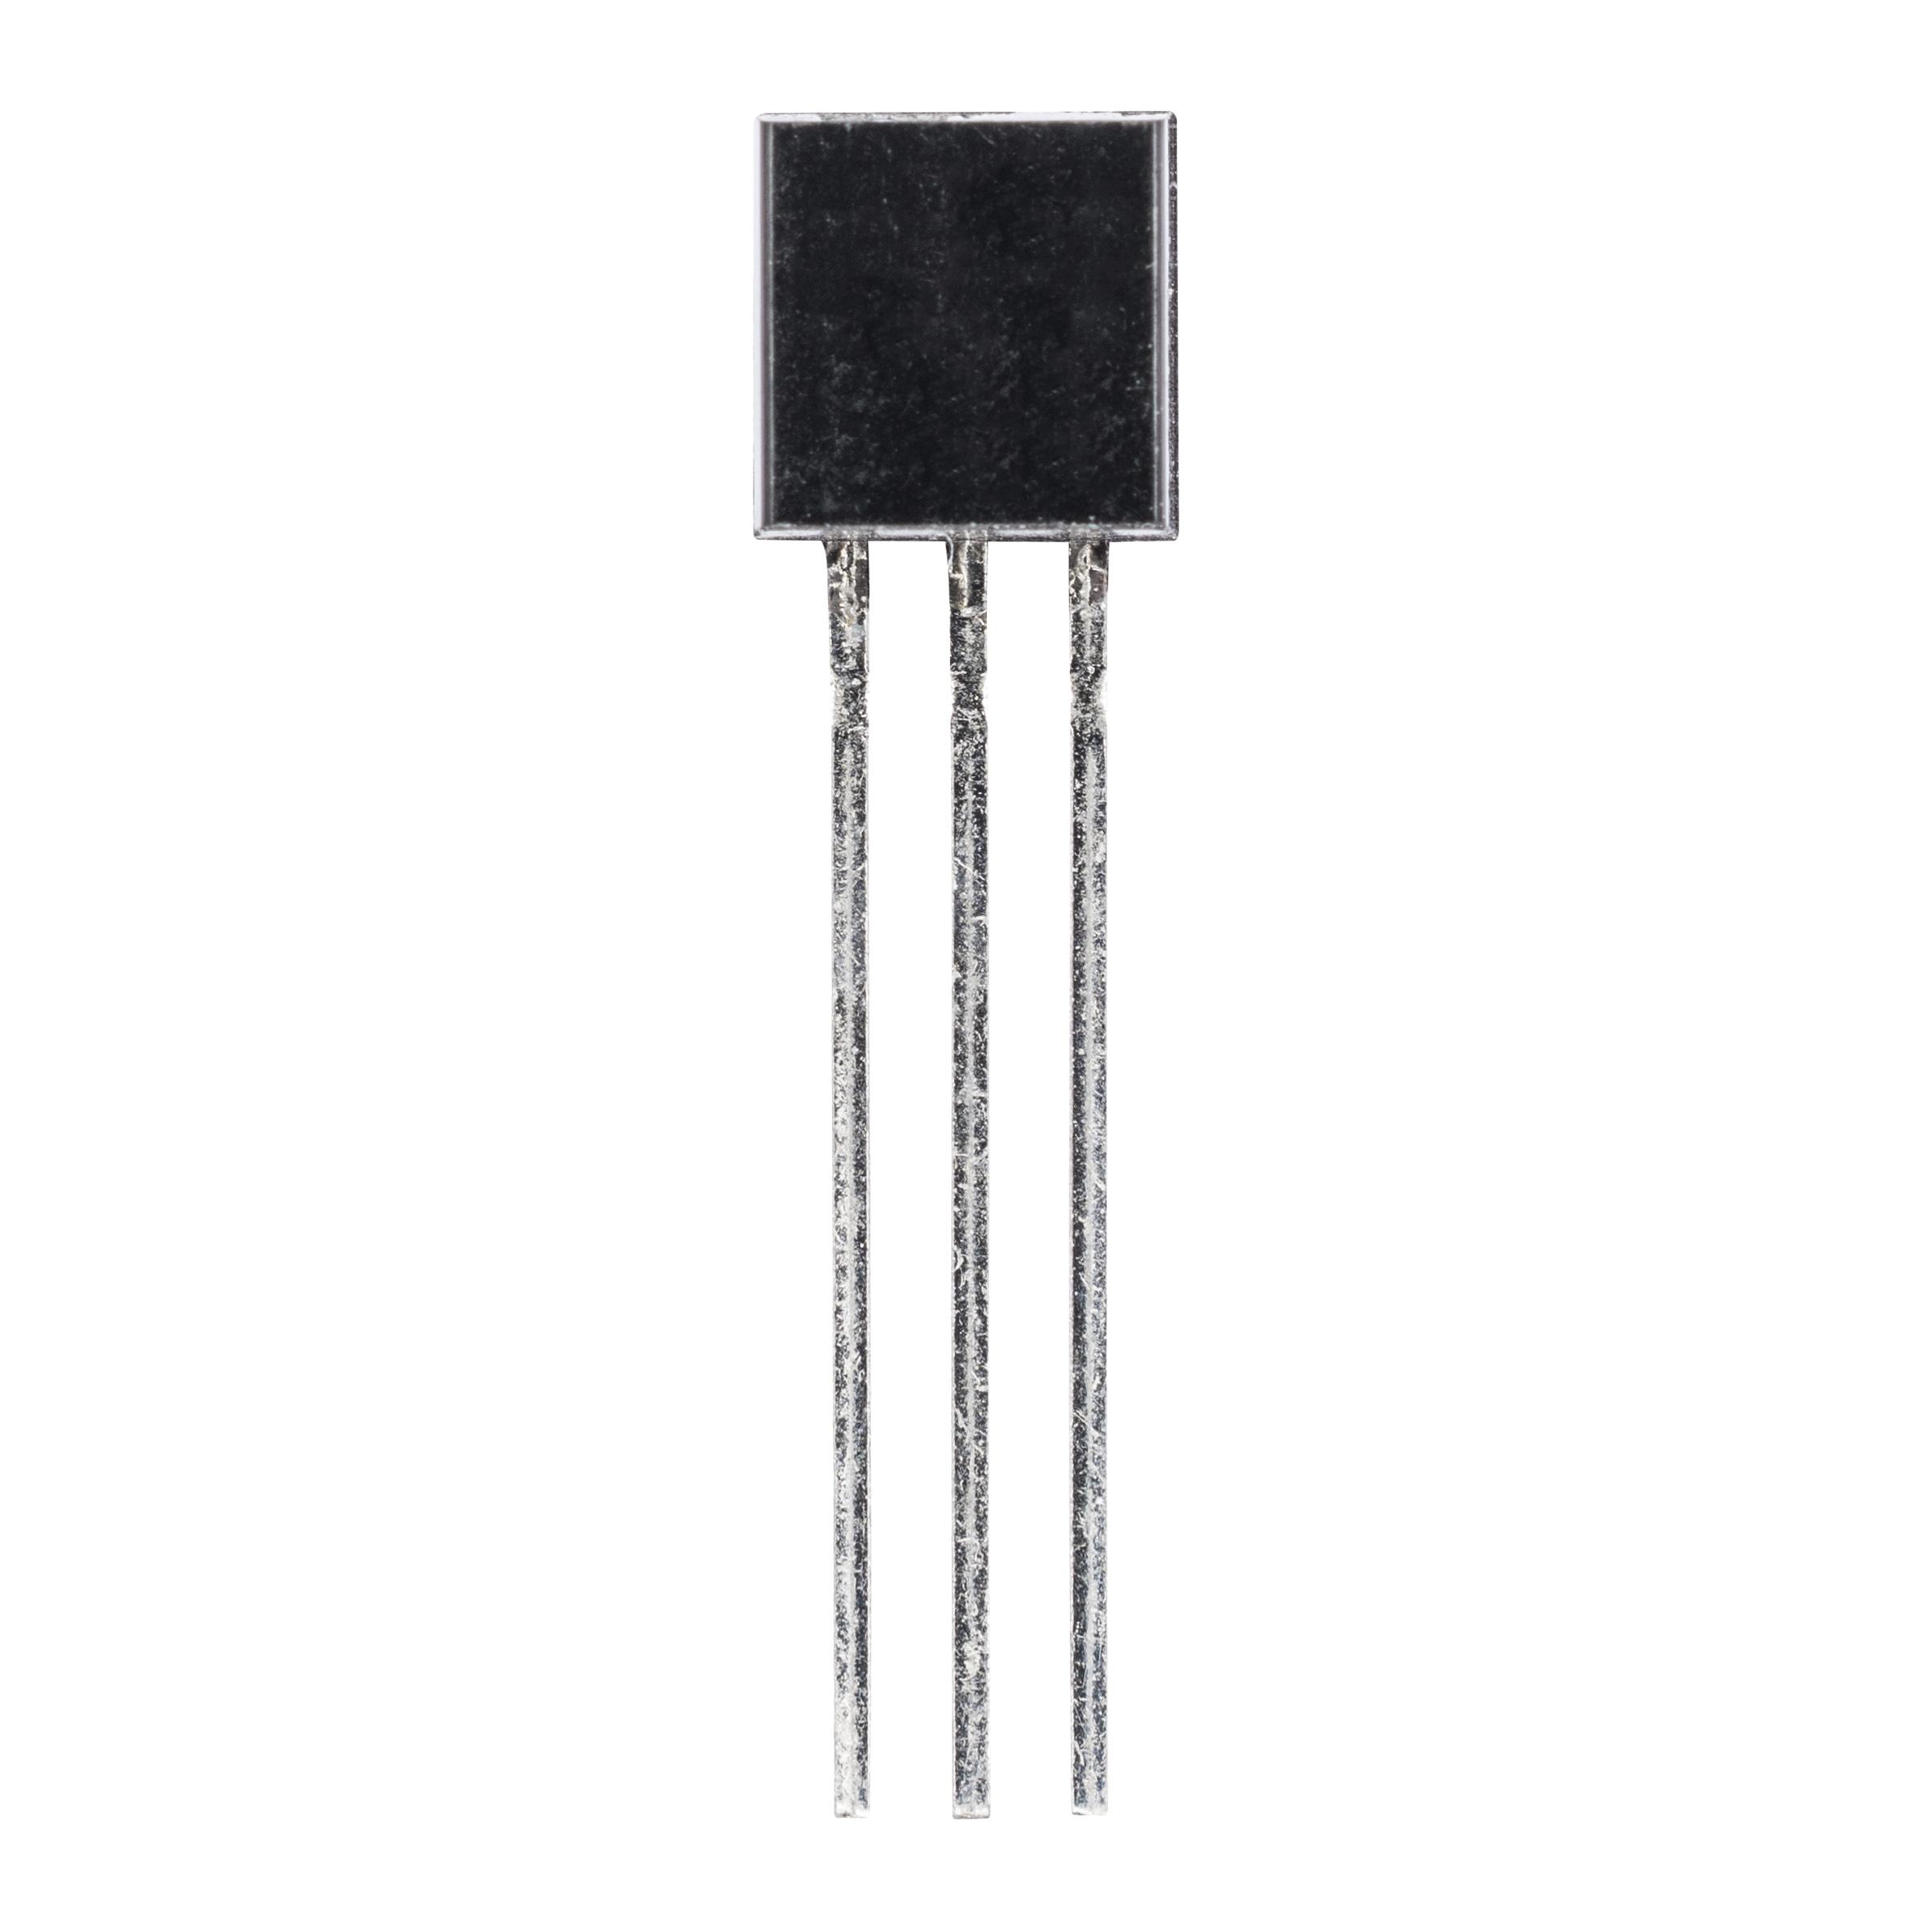 2N5551 (транзистор біполярний NPN)